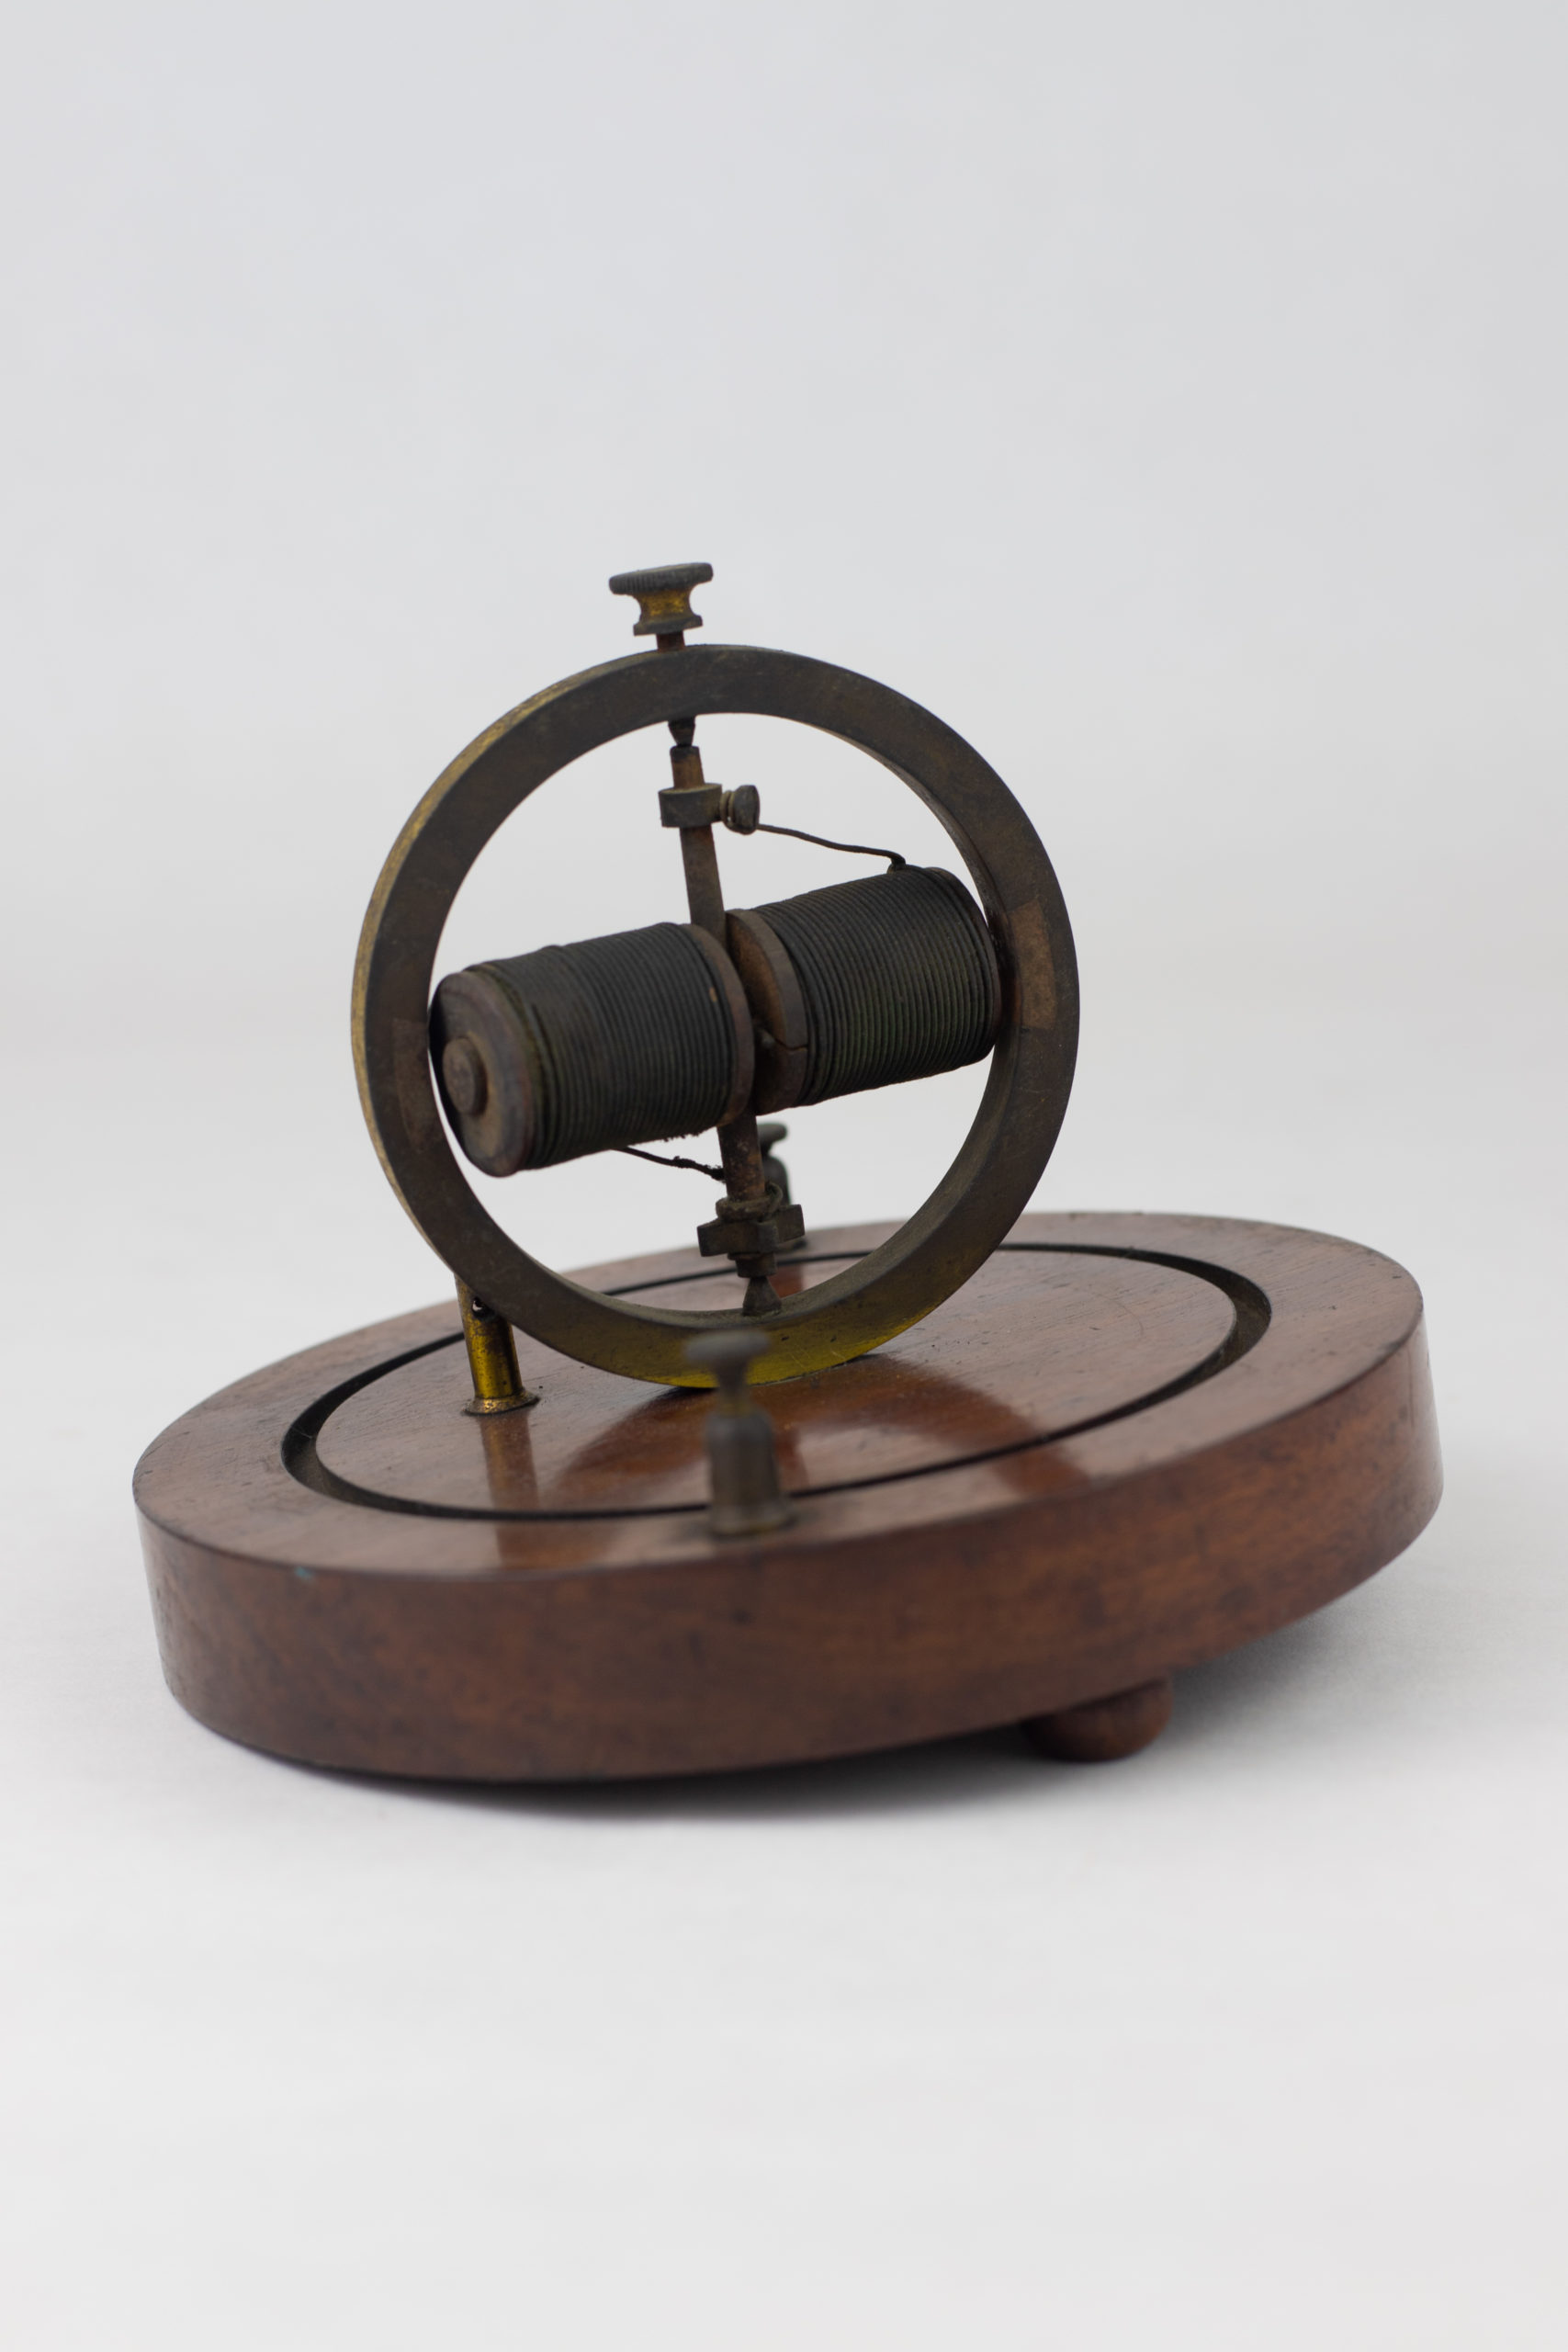 Instrument per demostrar la llei d’inducció de Faraday